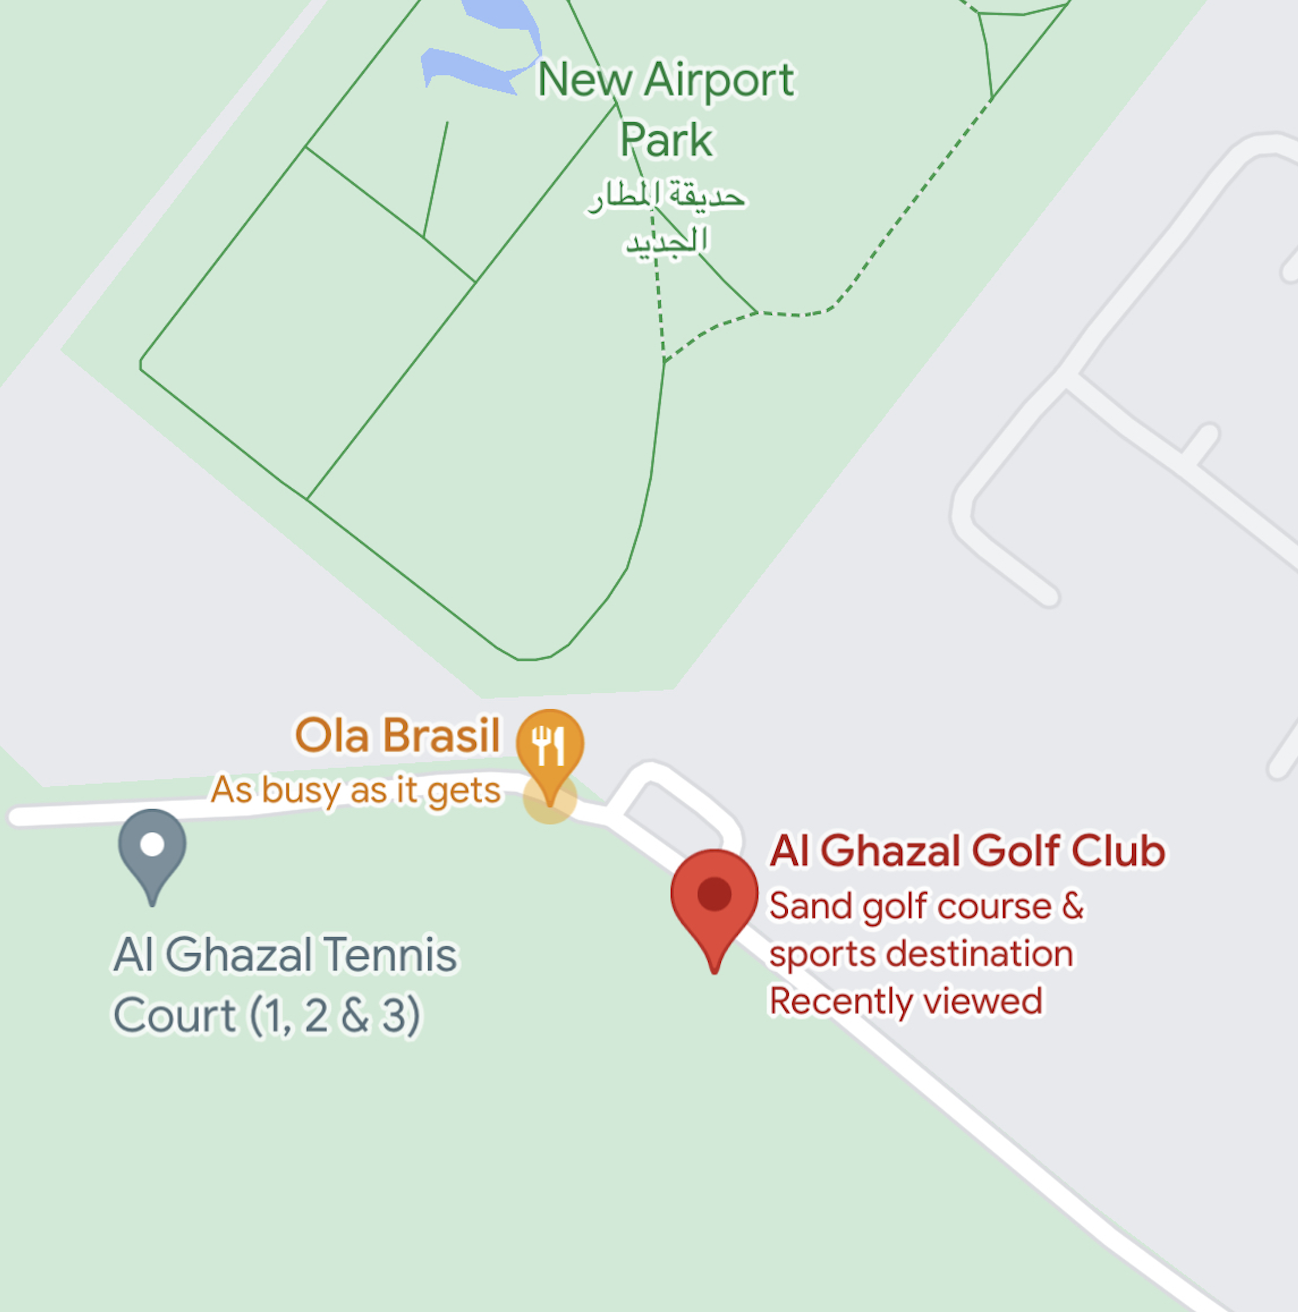 Al Ghazal Golf Club location in google maps 